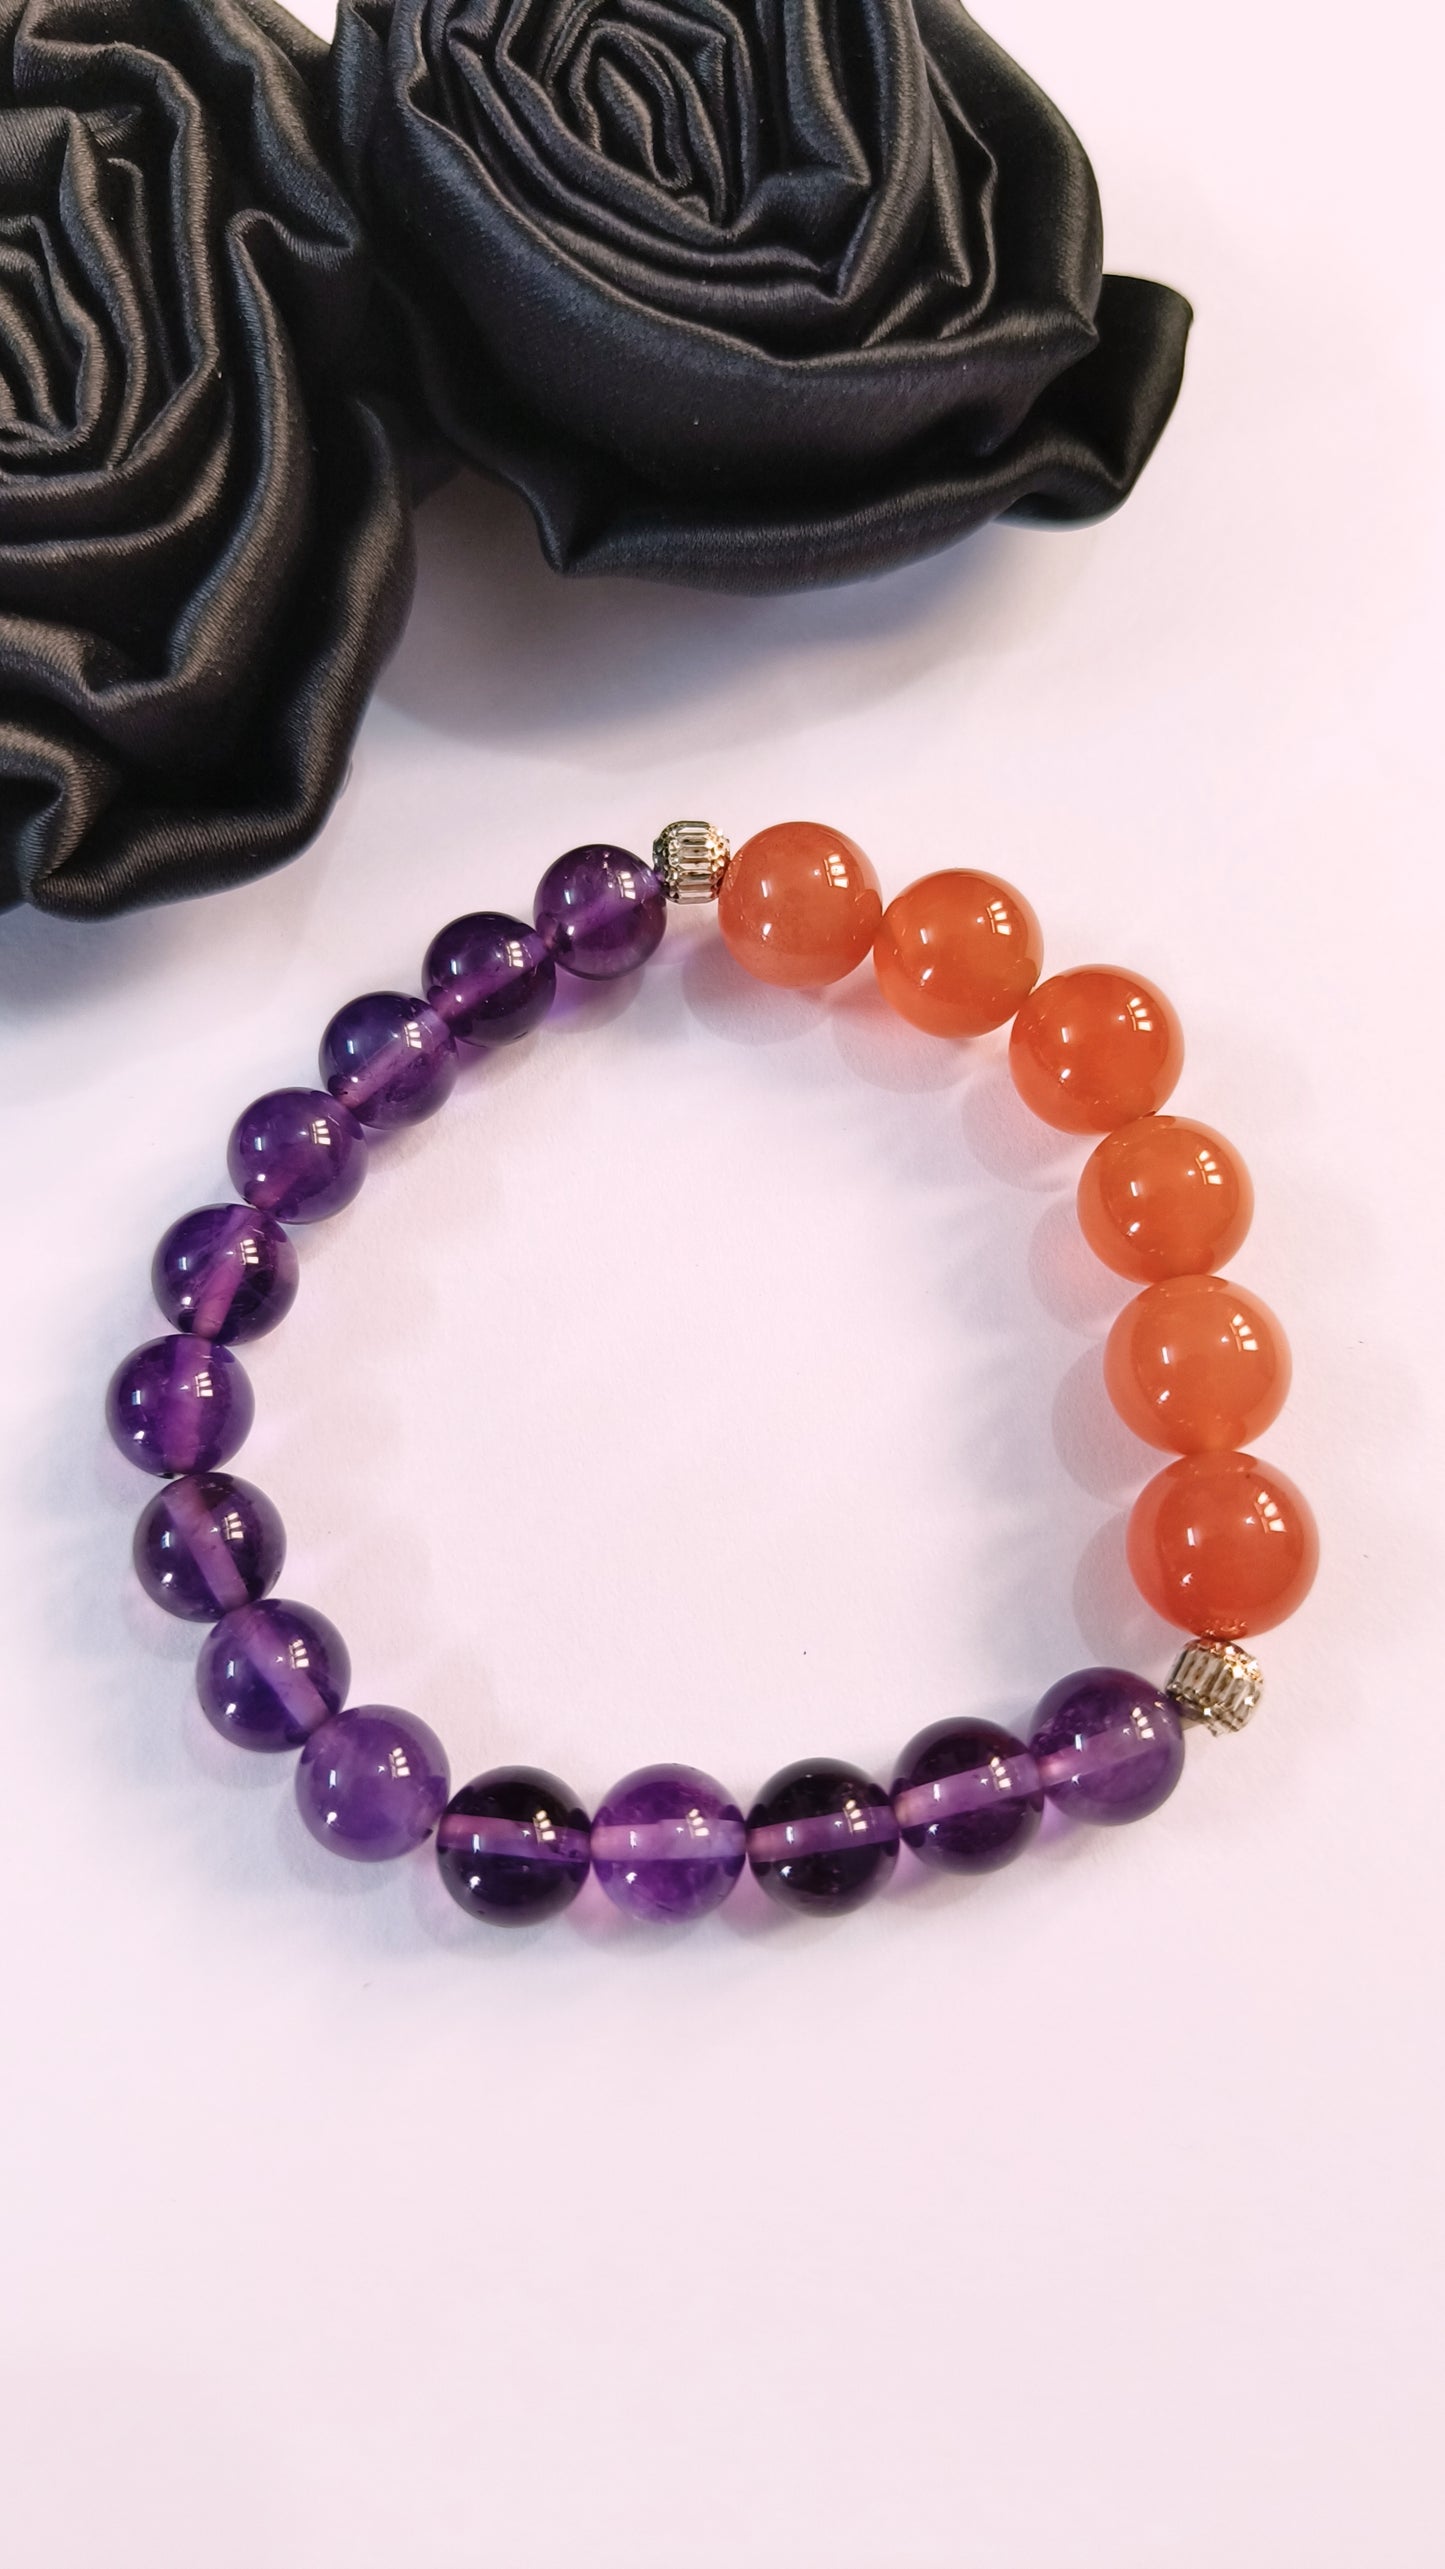 Natural Coloured Gemstone Bracelets, Half and Half Beads Bracelets, Healing Crystals Bracelet